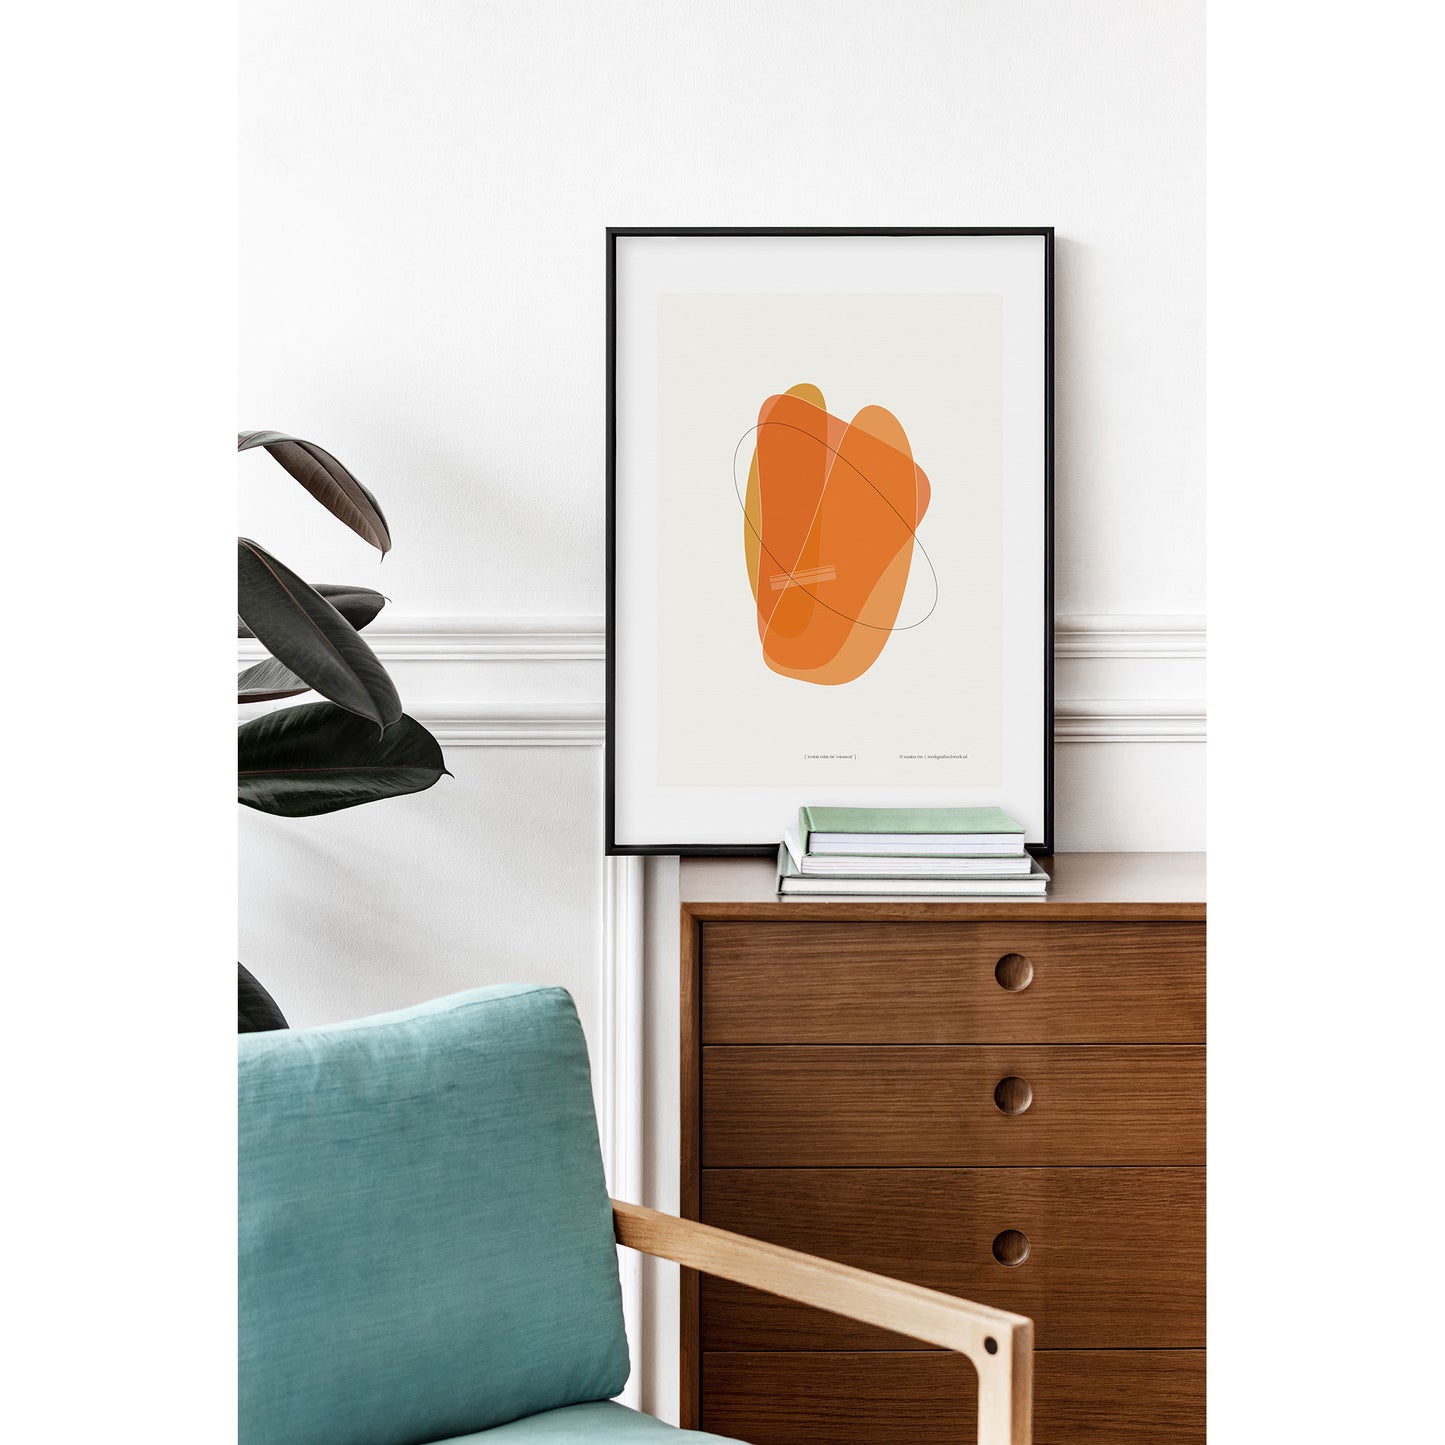 Productafbeelding, poster "vorm vier in orange", foto impressie 3, staande op een ladekast in een interieur ingelijst